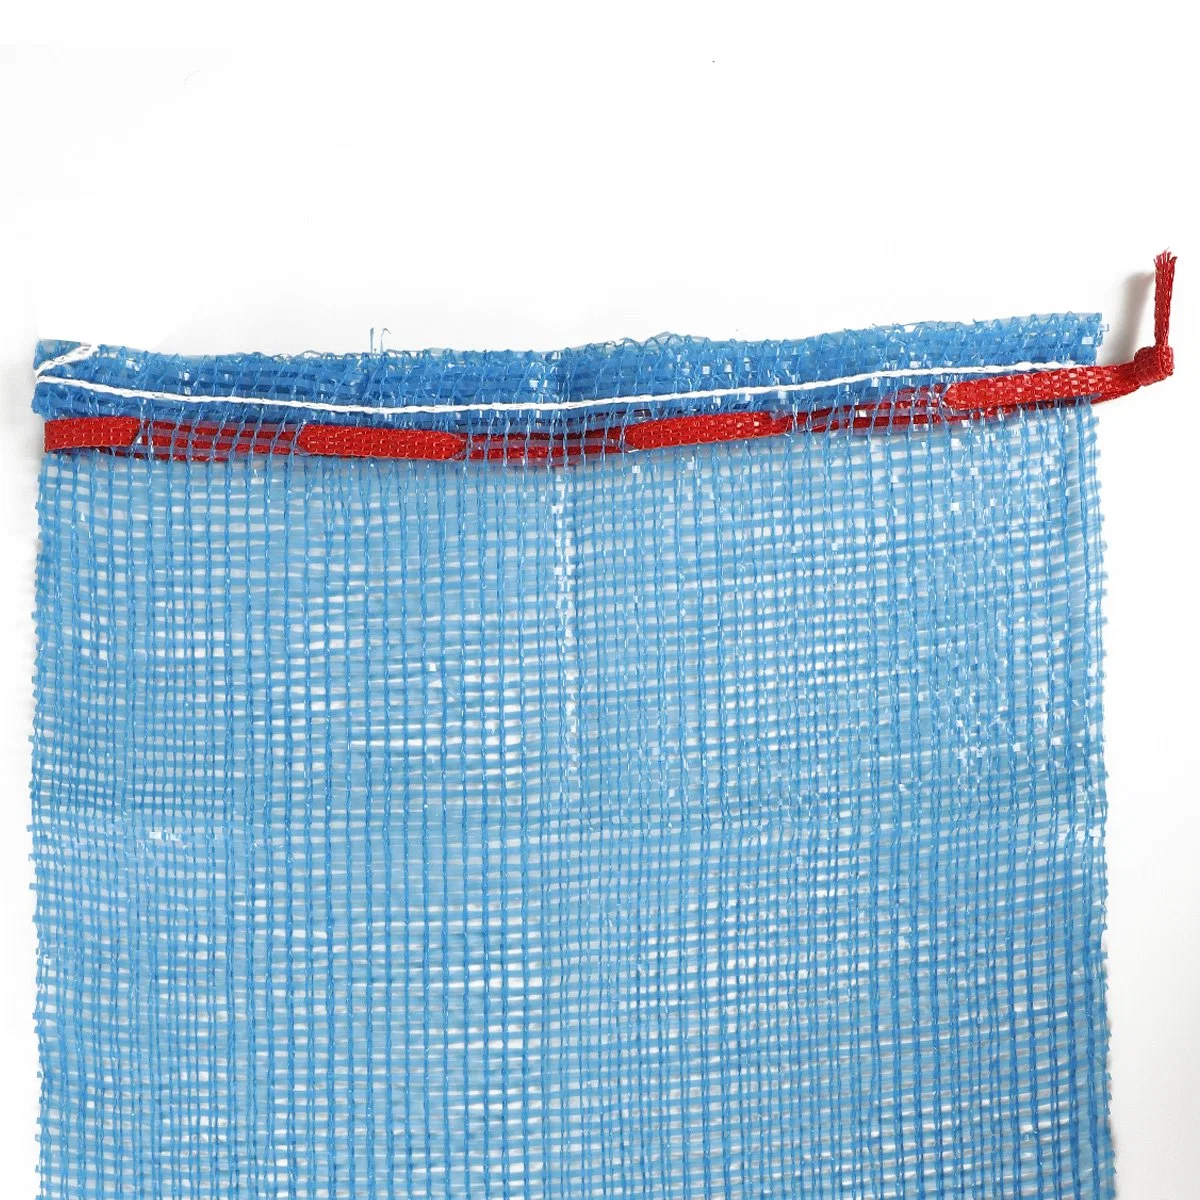 Netting Bags for Vegetables Firewood Tubular Mesh Bags